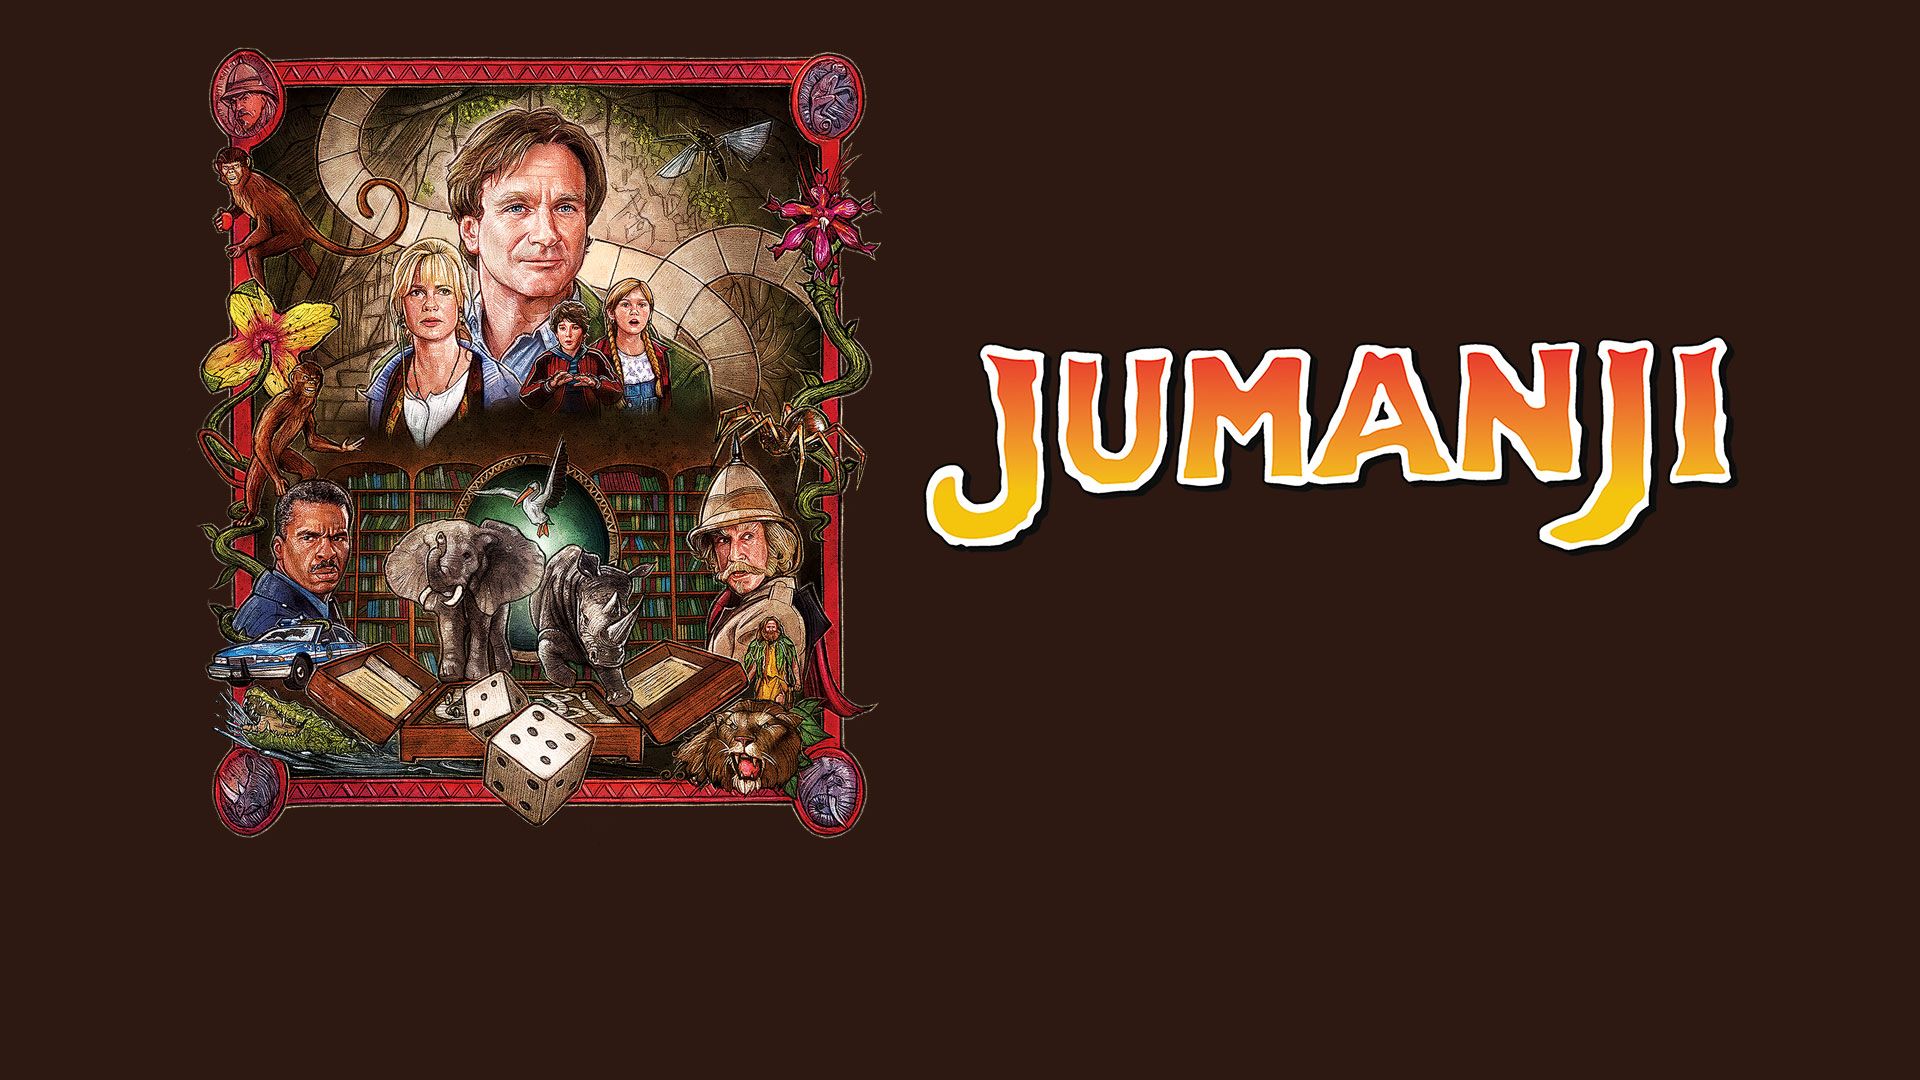 Jumanji HD Wallpaper by Kyle Lambert